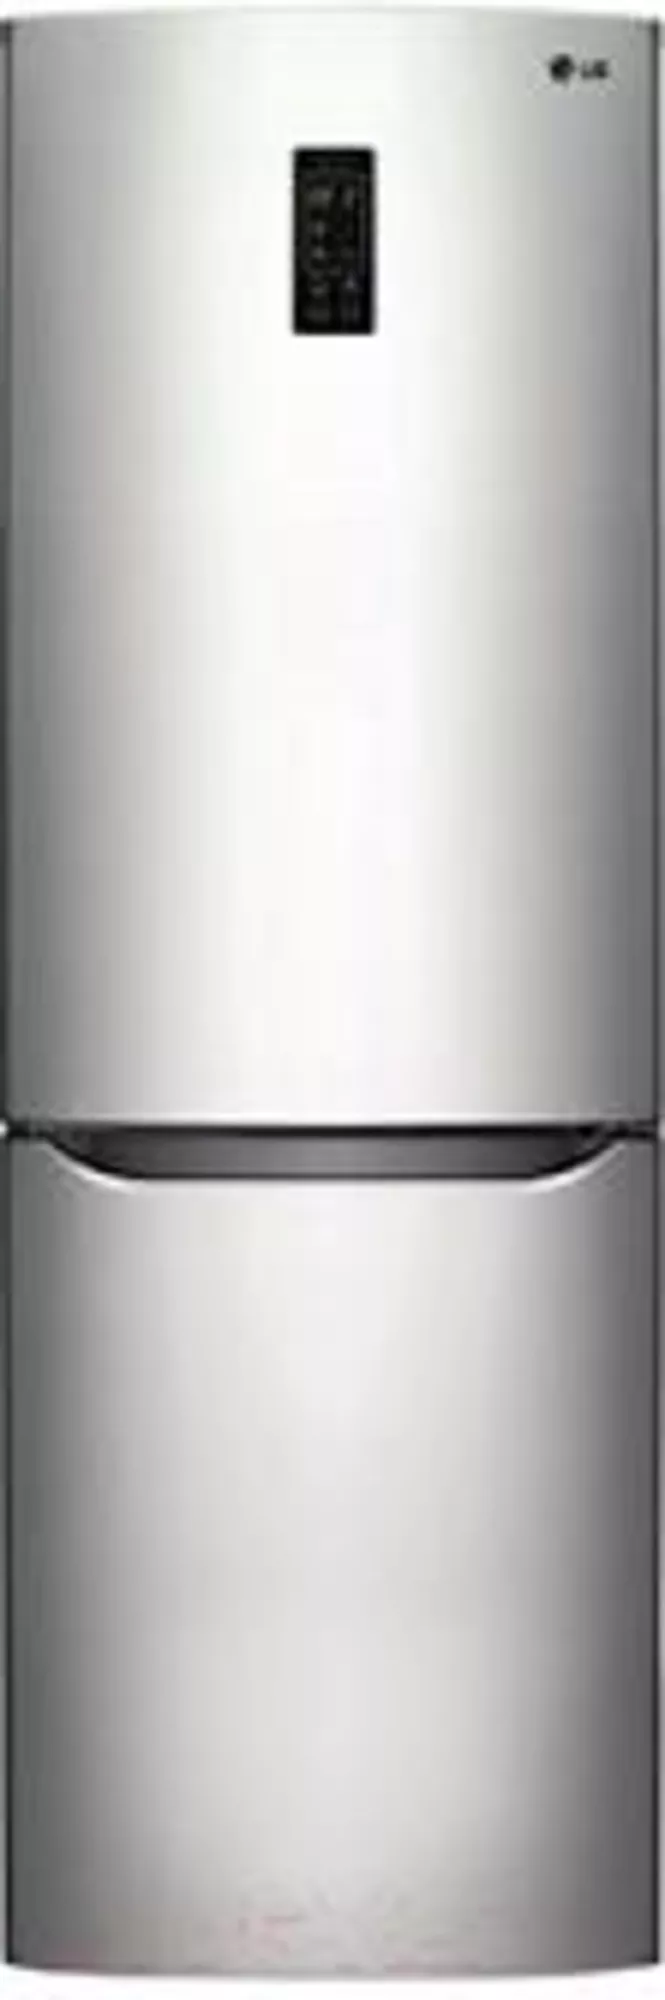 Продам холодильник LG GA-B379SLQA